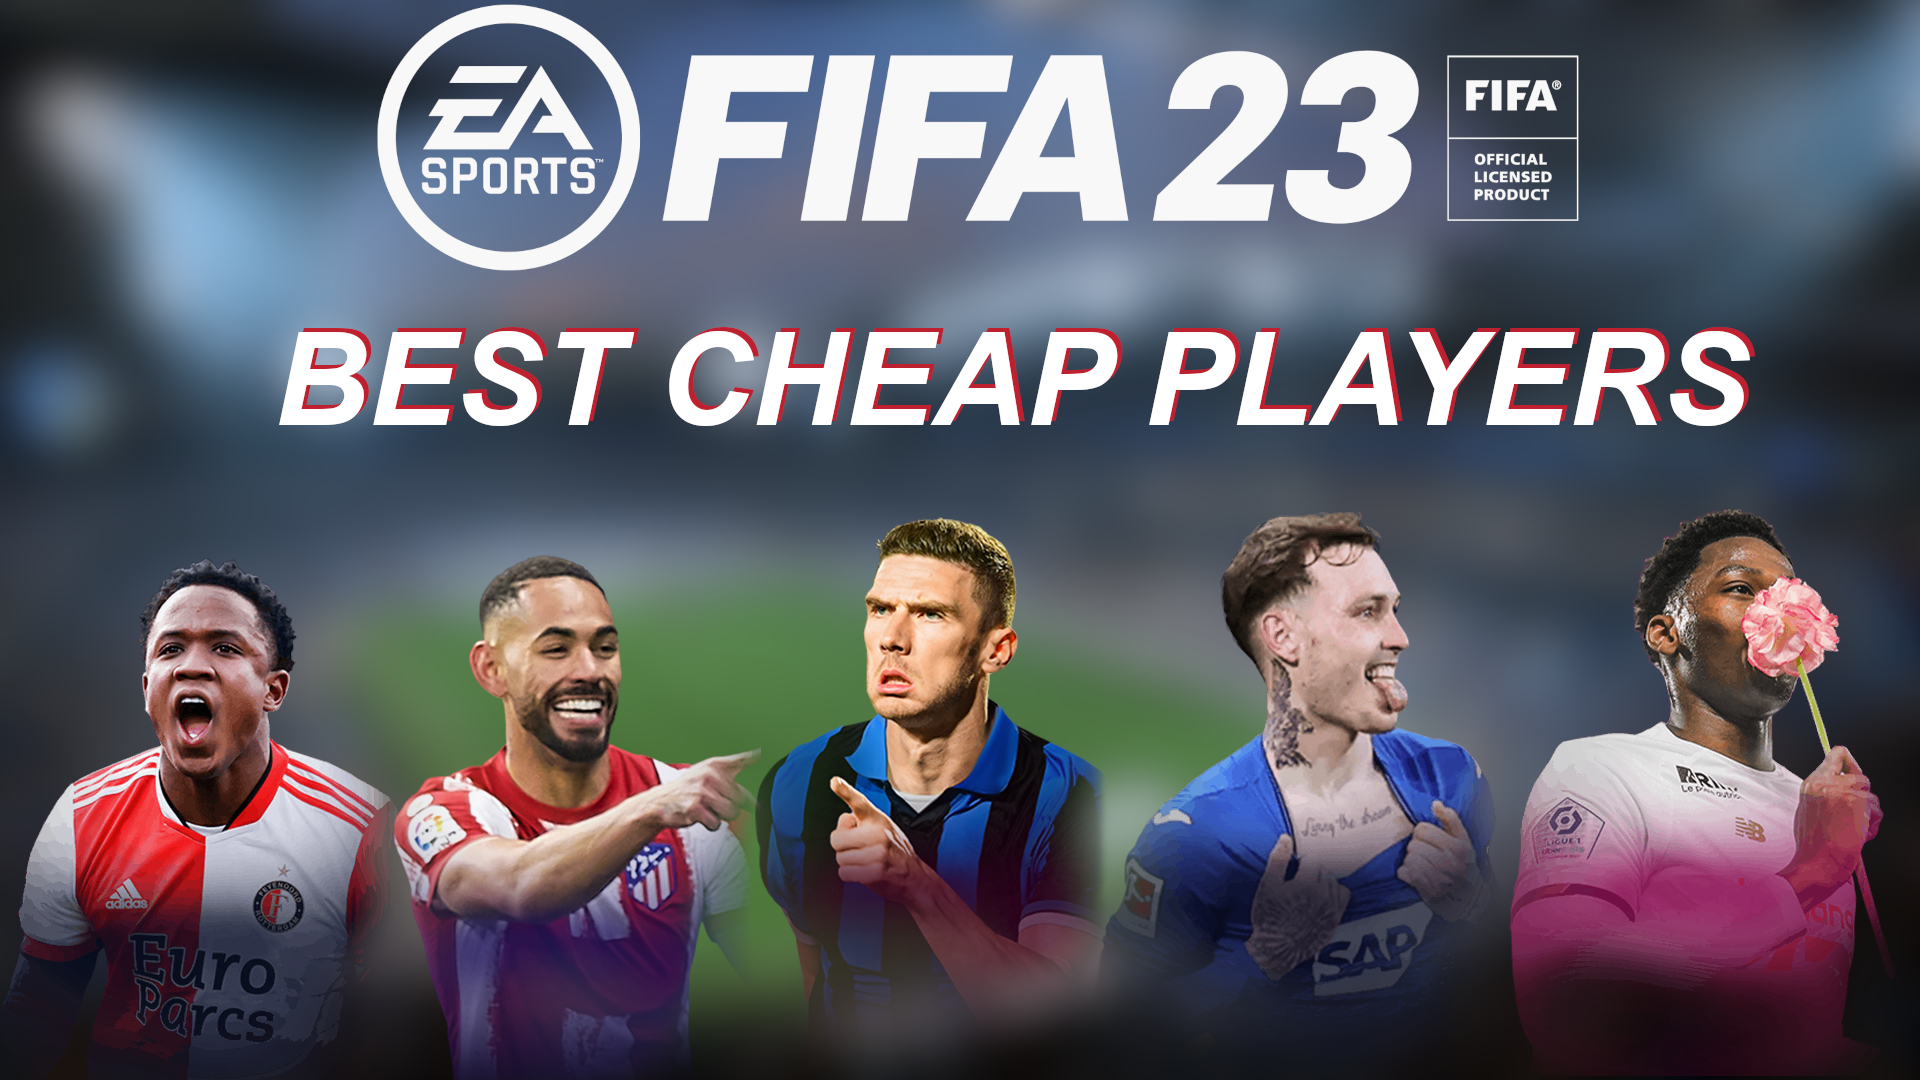 Fifa 23 Best Cheap Players List Richarlison Griezmann More In Fut